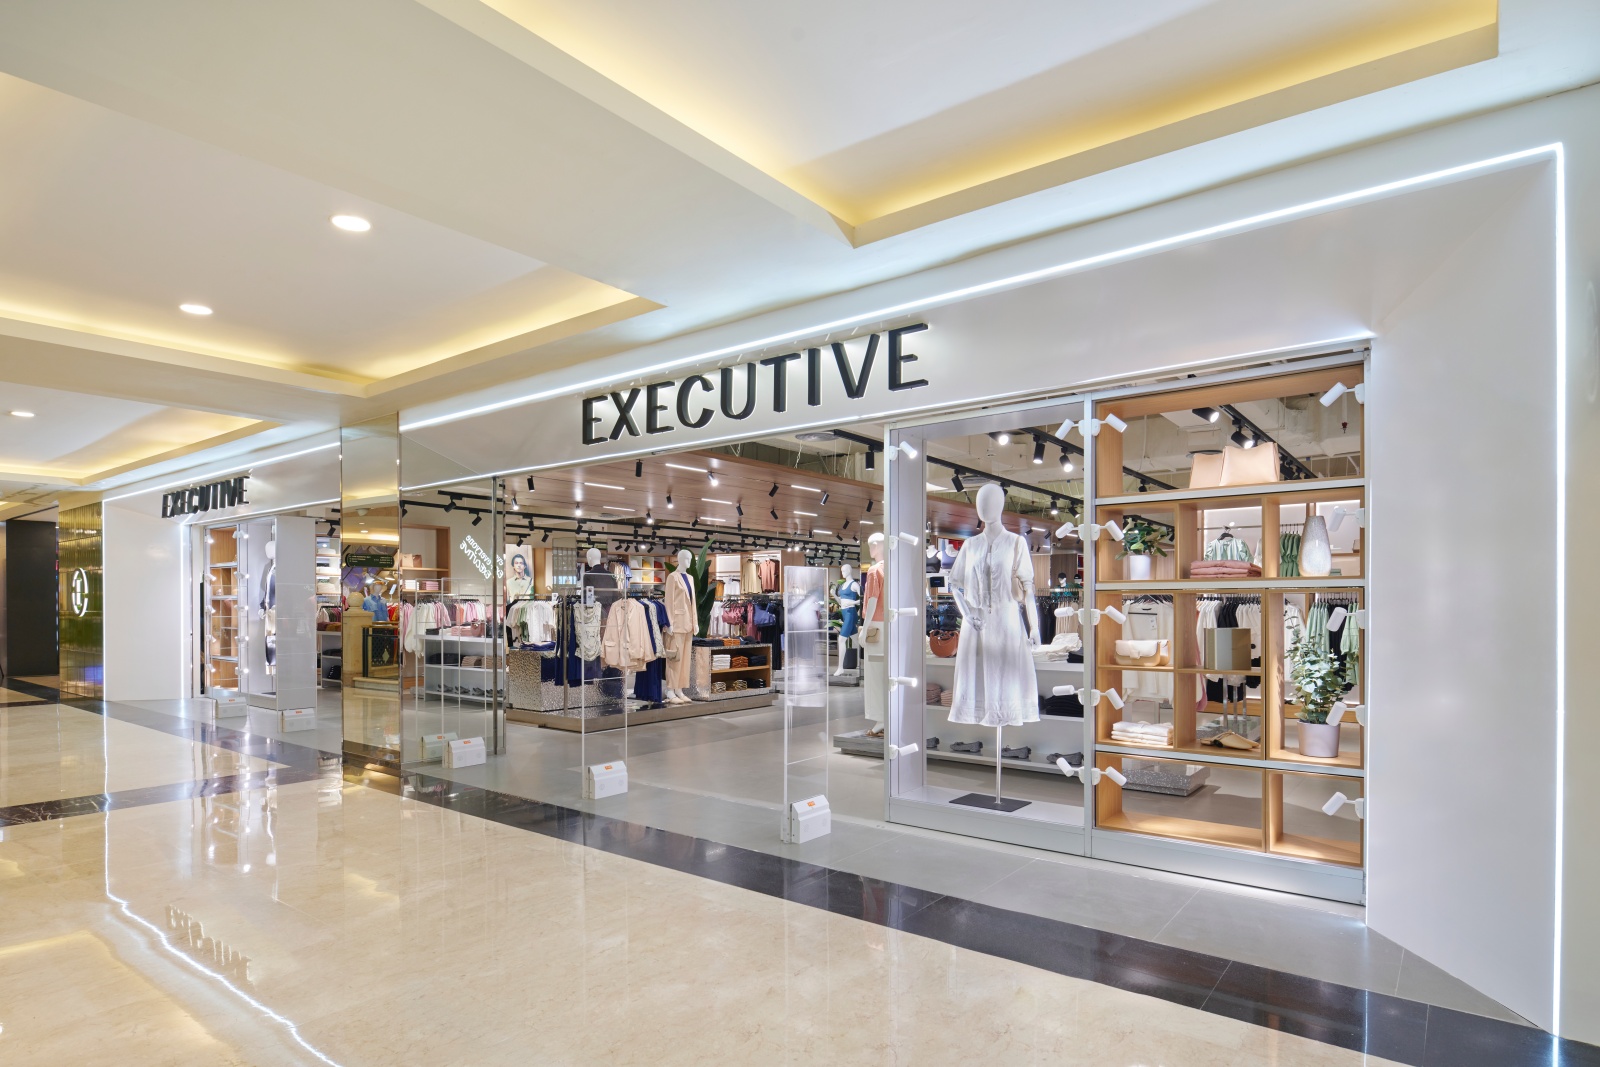 Store Executive di Puri Mall Usung Konsep Baru yang Lebih Modern